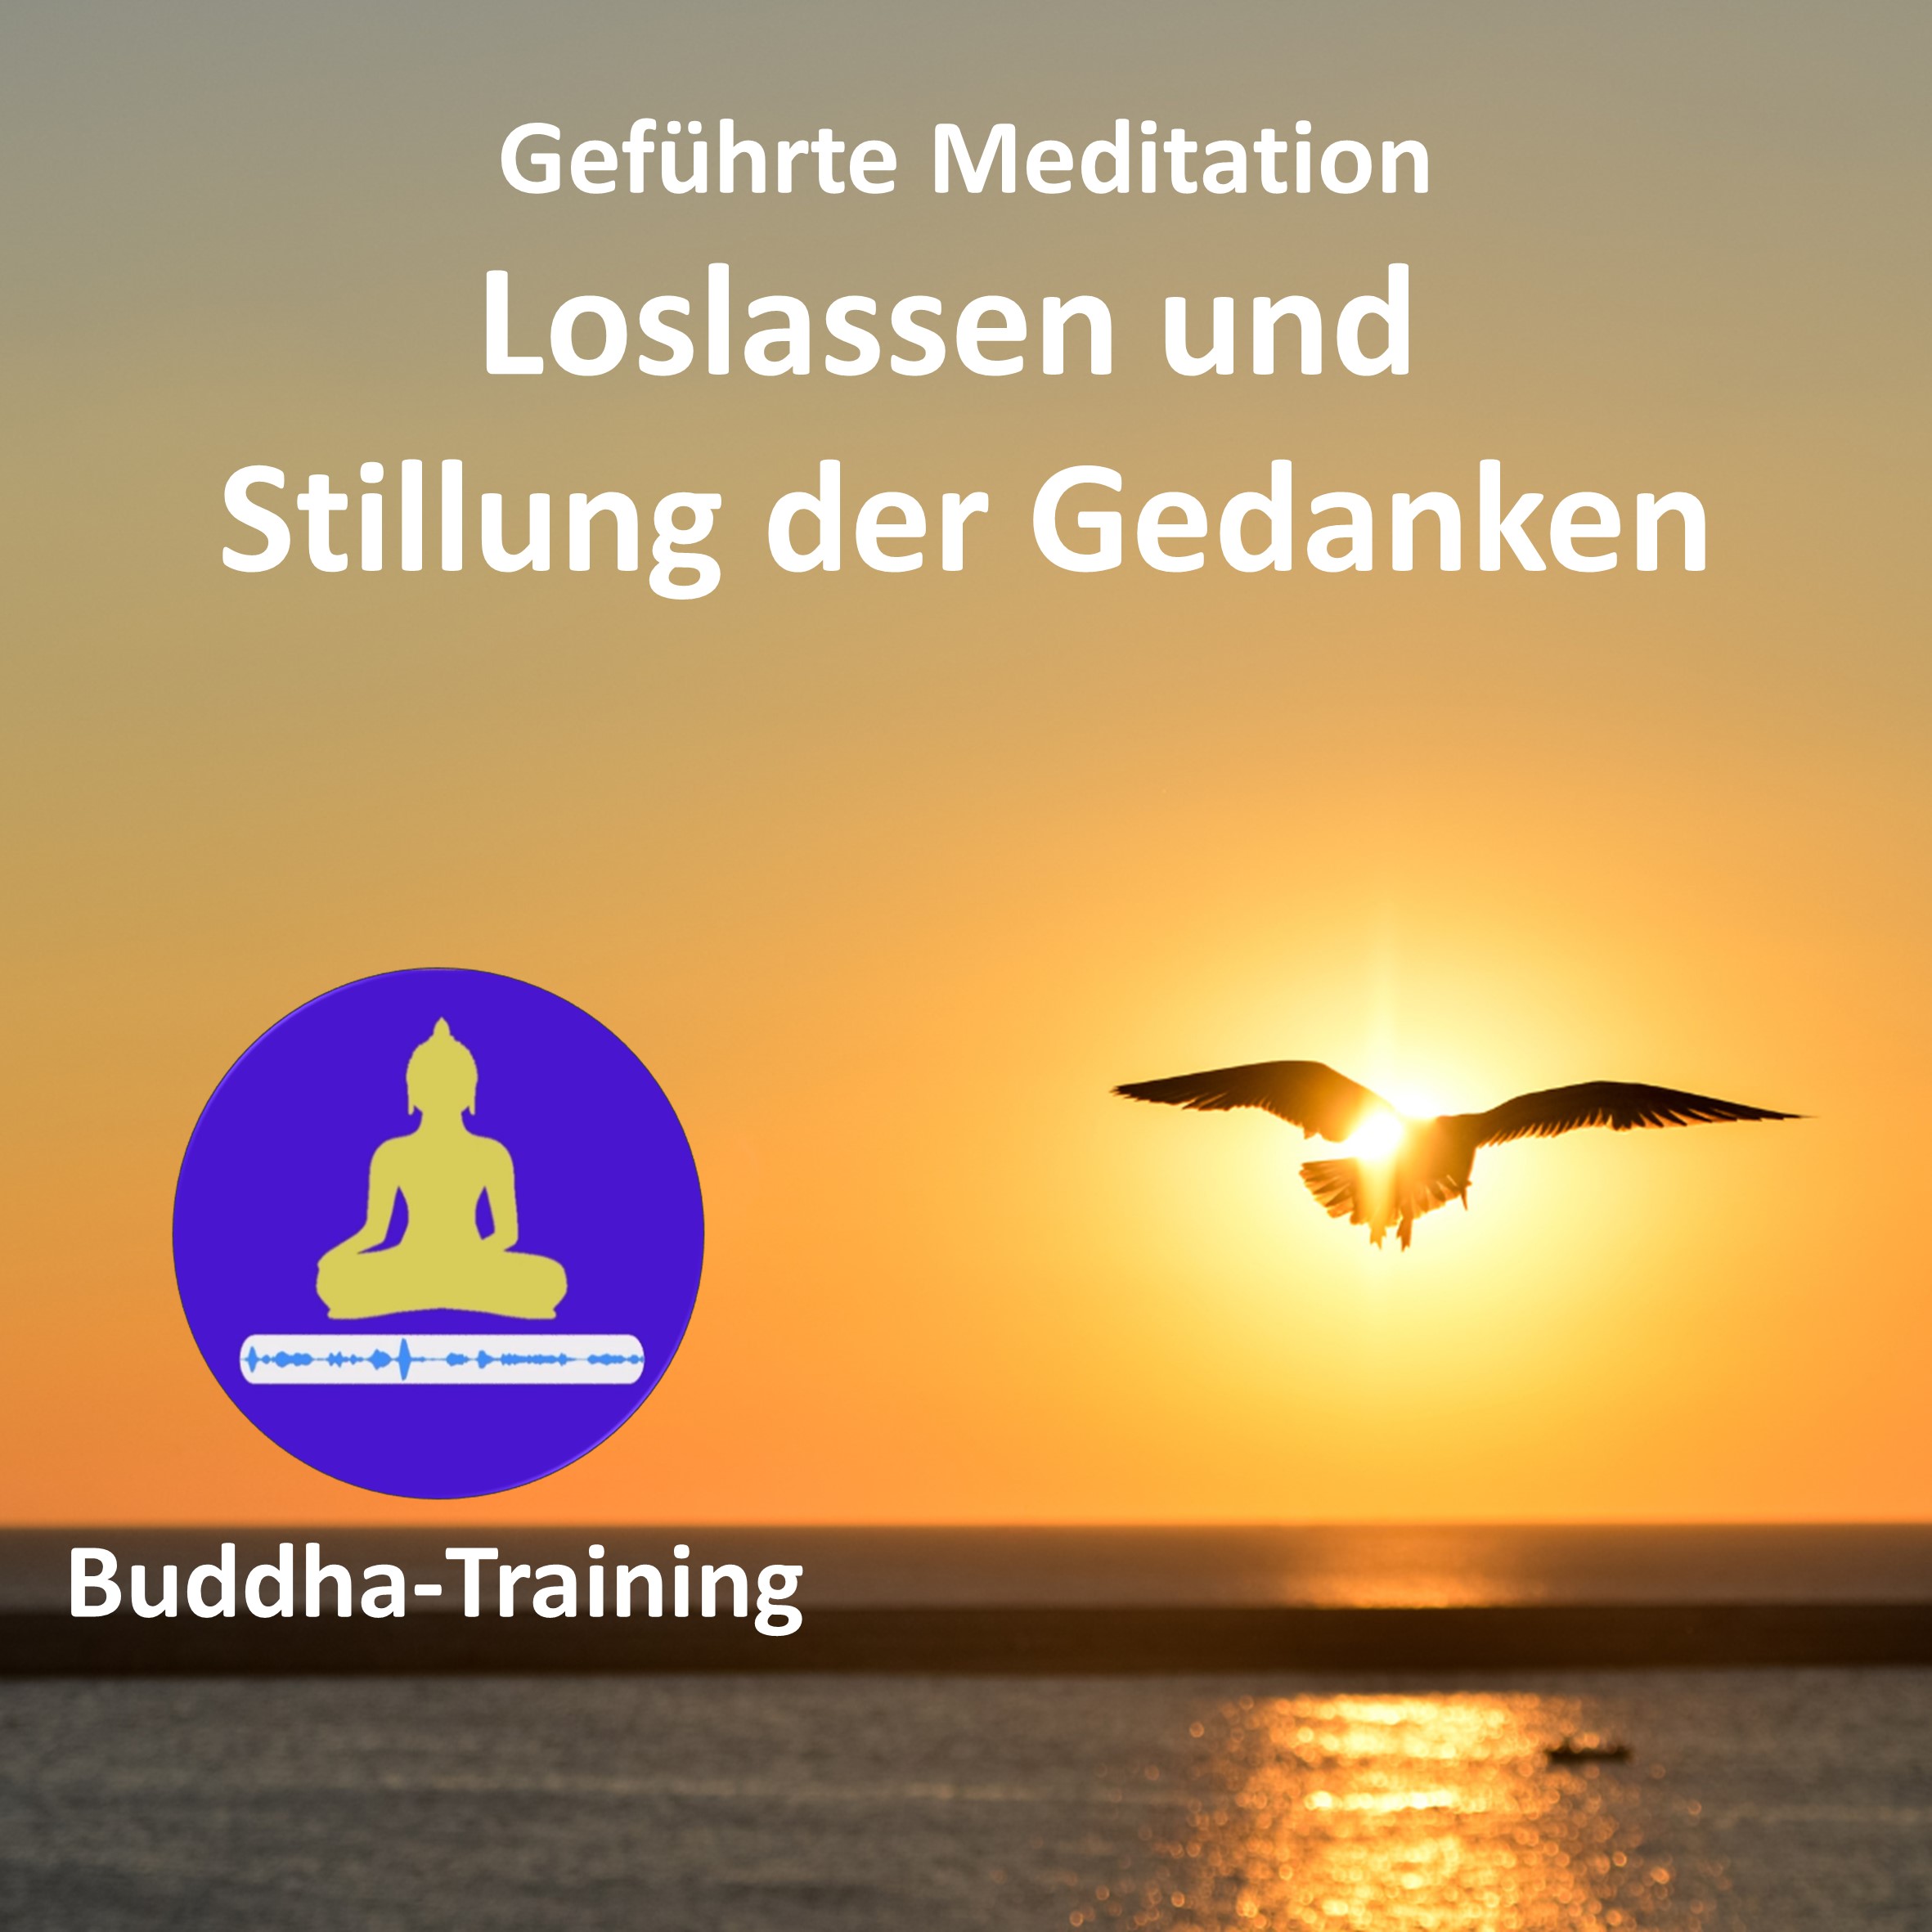 14. Geführte Meditation: Loslassen und Stillung der Gedanken